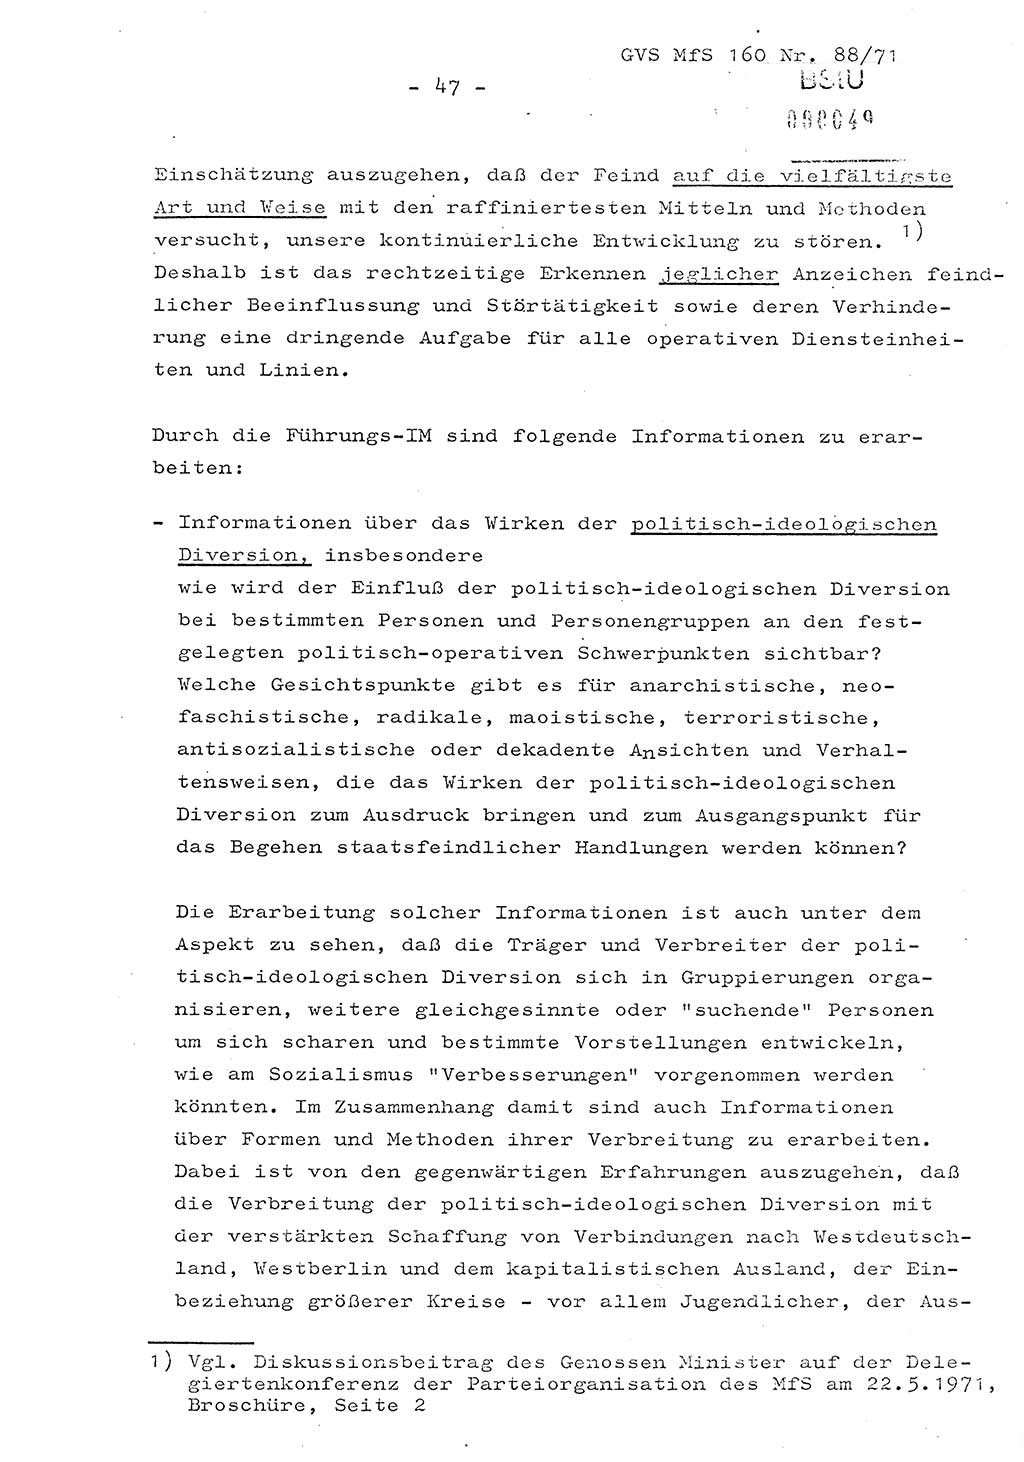 Dissertation Oberstleutnant Josef Schwarz (BV Schwerin), Major Fritz Amm (JHS), Hauptmann Peter Gräßler (JHS), Ministerium für Staatssicherheit (MfS) [Deutsche Demokratische Republik (DDR)], Juristische Hochschule (JHS), Geheime Verschlußsache (GVS) 160-88/71, Potsdam 1972, Seite 47 (Diss. MfS DDR JHS GVS 160-88/71 1972, S. 47)